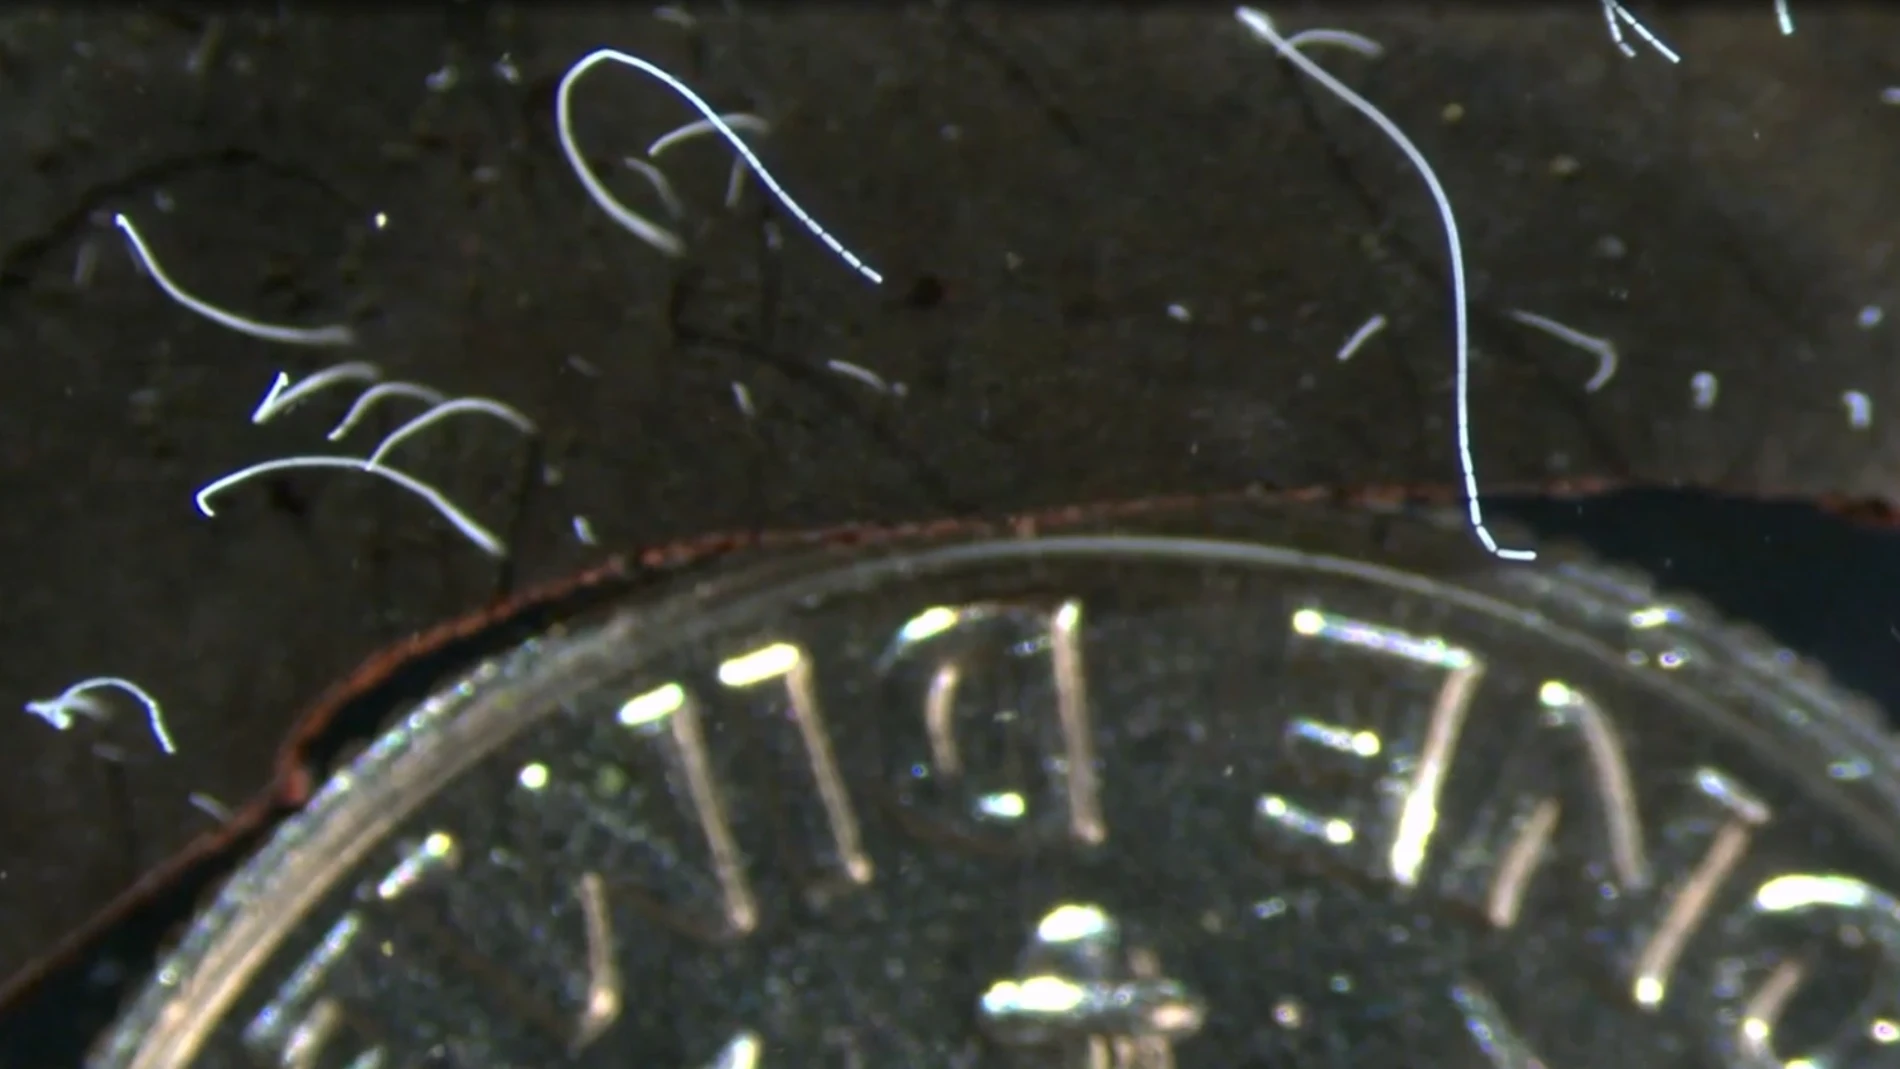 Bacterias "Thiomargarita magnifica", junto a una moneda de 10 centavos de dólar